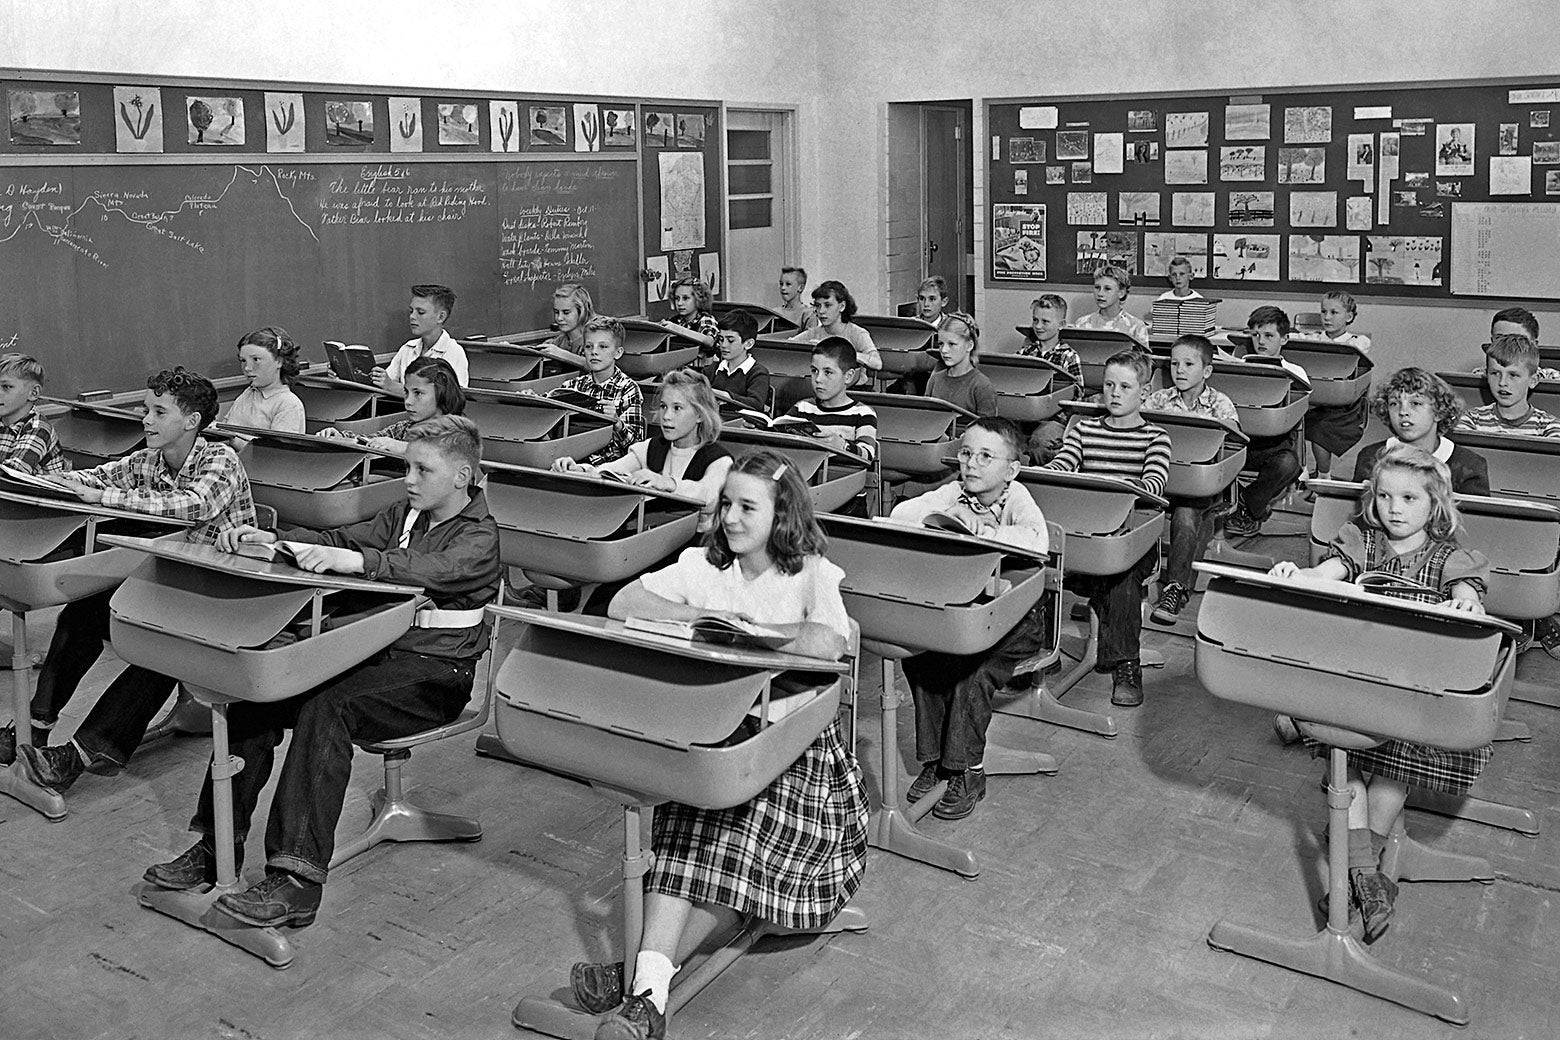 Children sit at desks in a classroom.